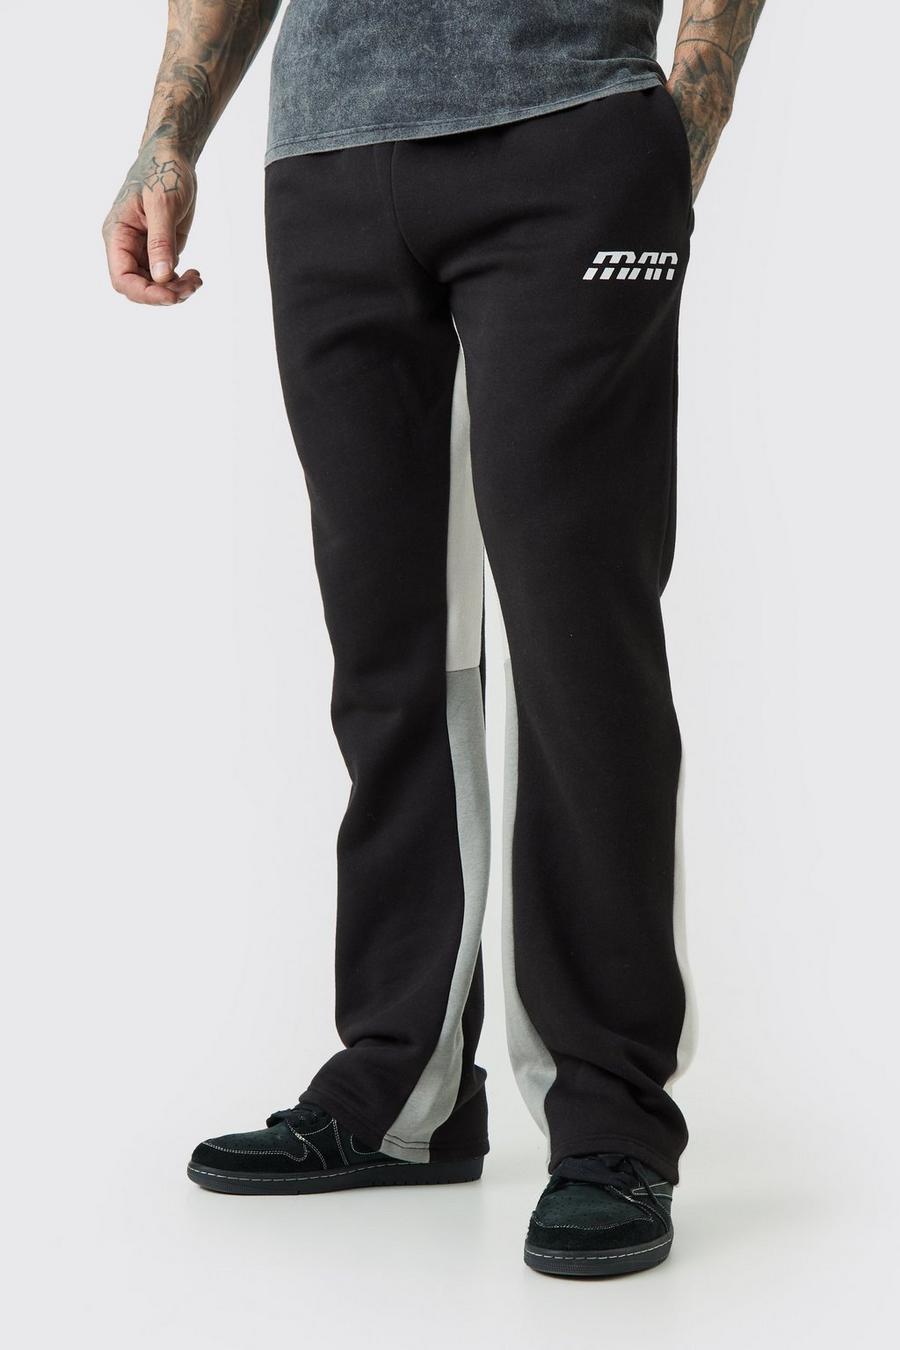 Pantalón deportivo Tall ajustado con colores en bloque y refuerzos, Black